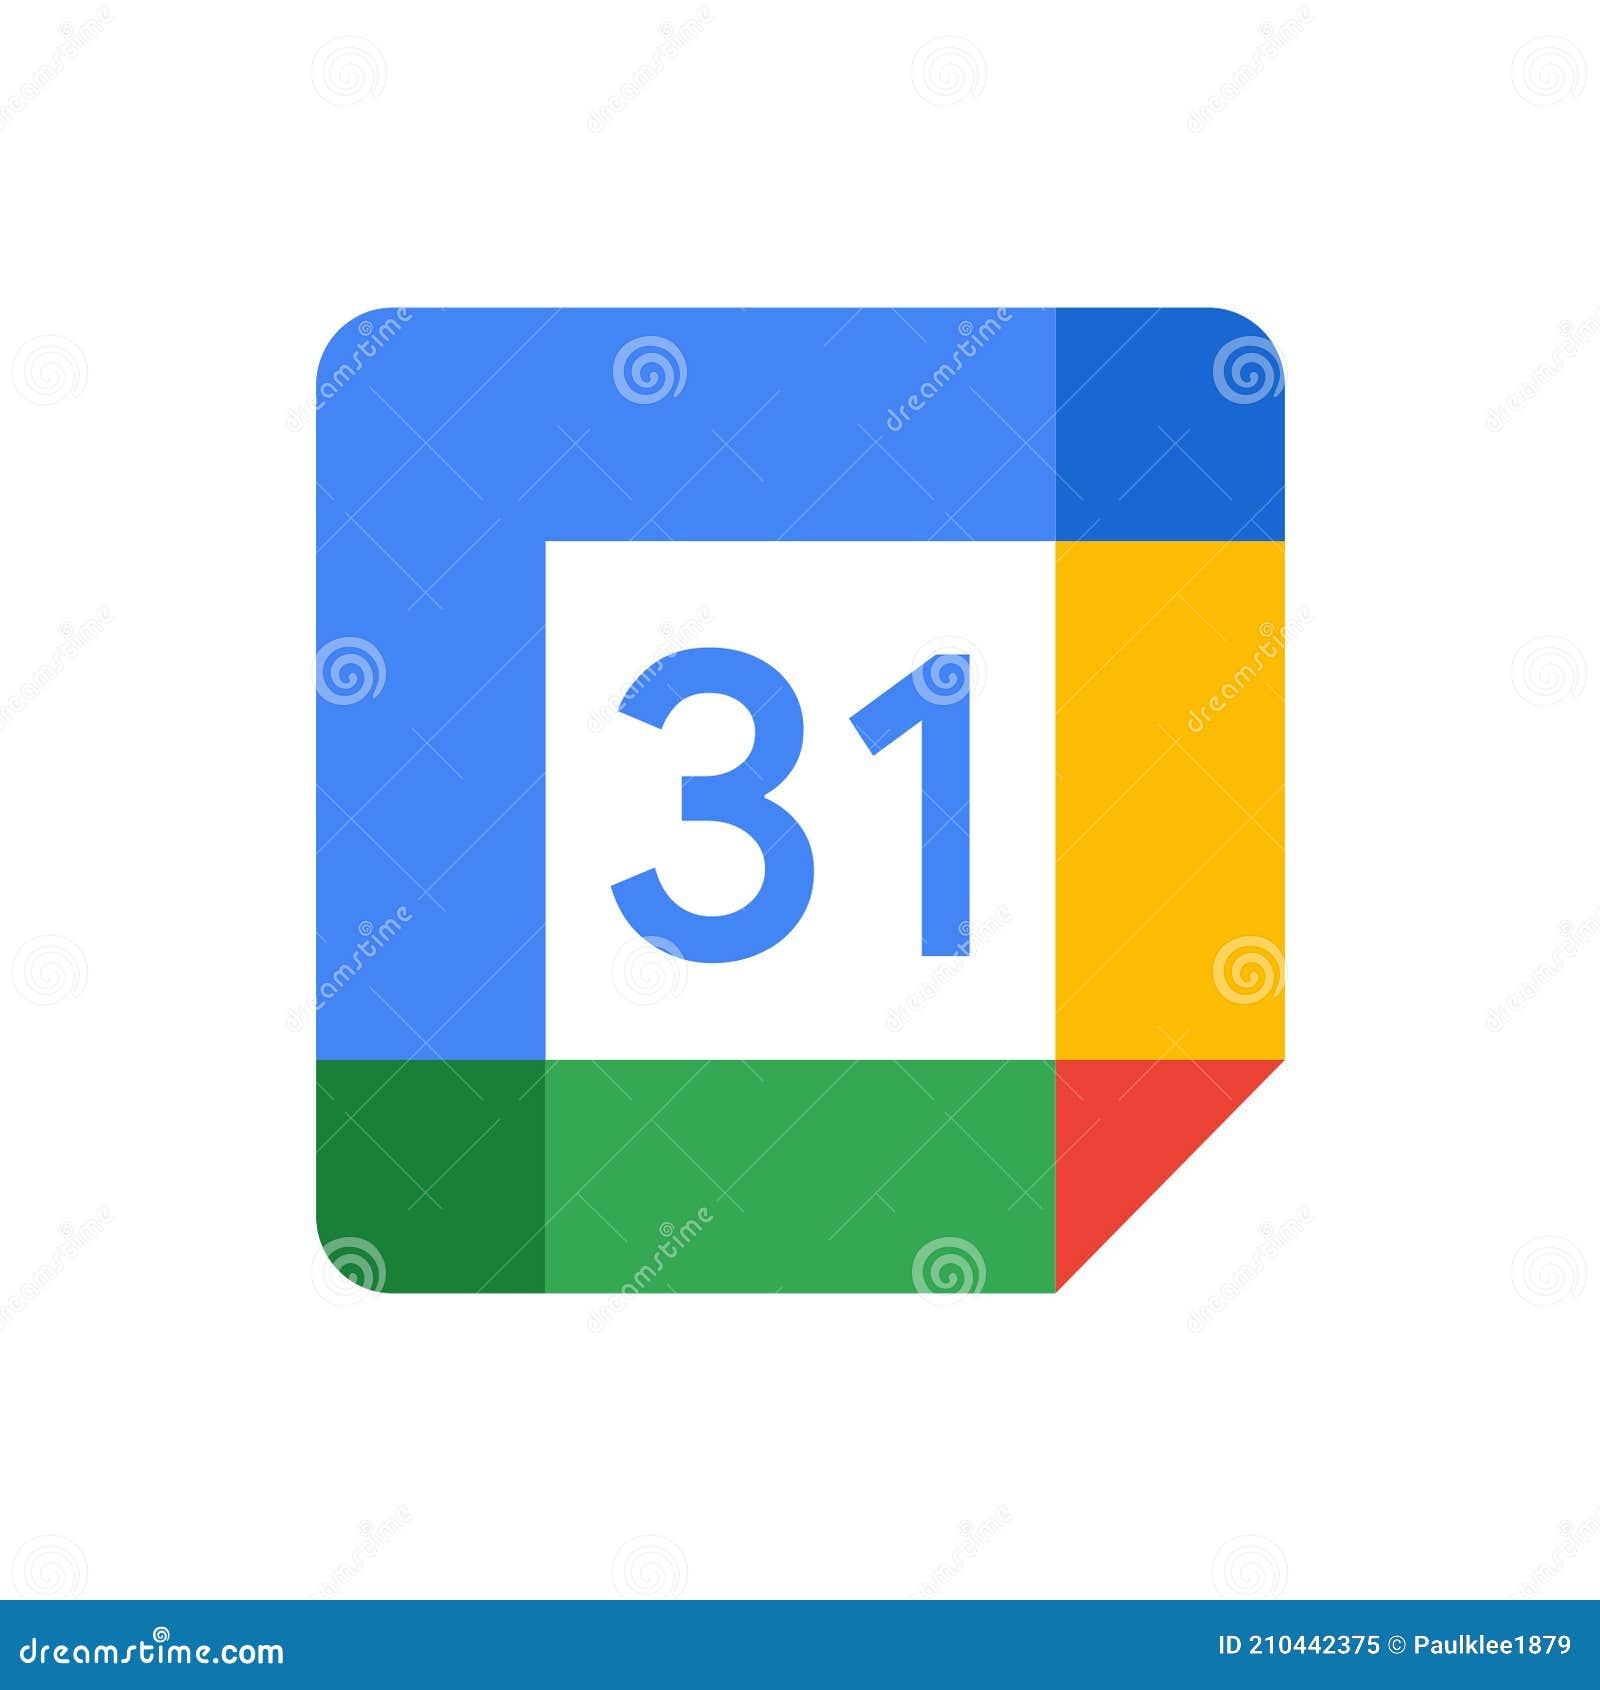 Hãy khám phá biểu tượng Logo Google Calendar đẹp mắt và chuyên nghiệp. Biểu tượng này giúp bạn quản lý lịch trình hiệu quả hơn với tính năng kết hợp các sự kiện và lịch riêng của mình. Xem hình ảnh liên quan để tìm hiểu thêm về Logo Google Calendar này.